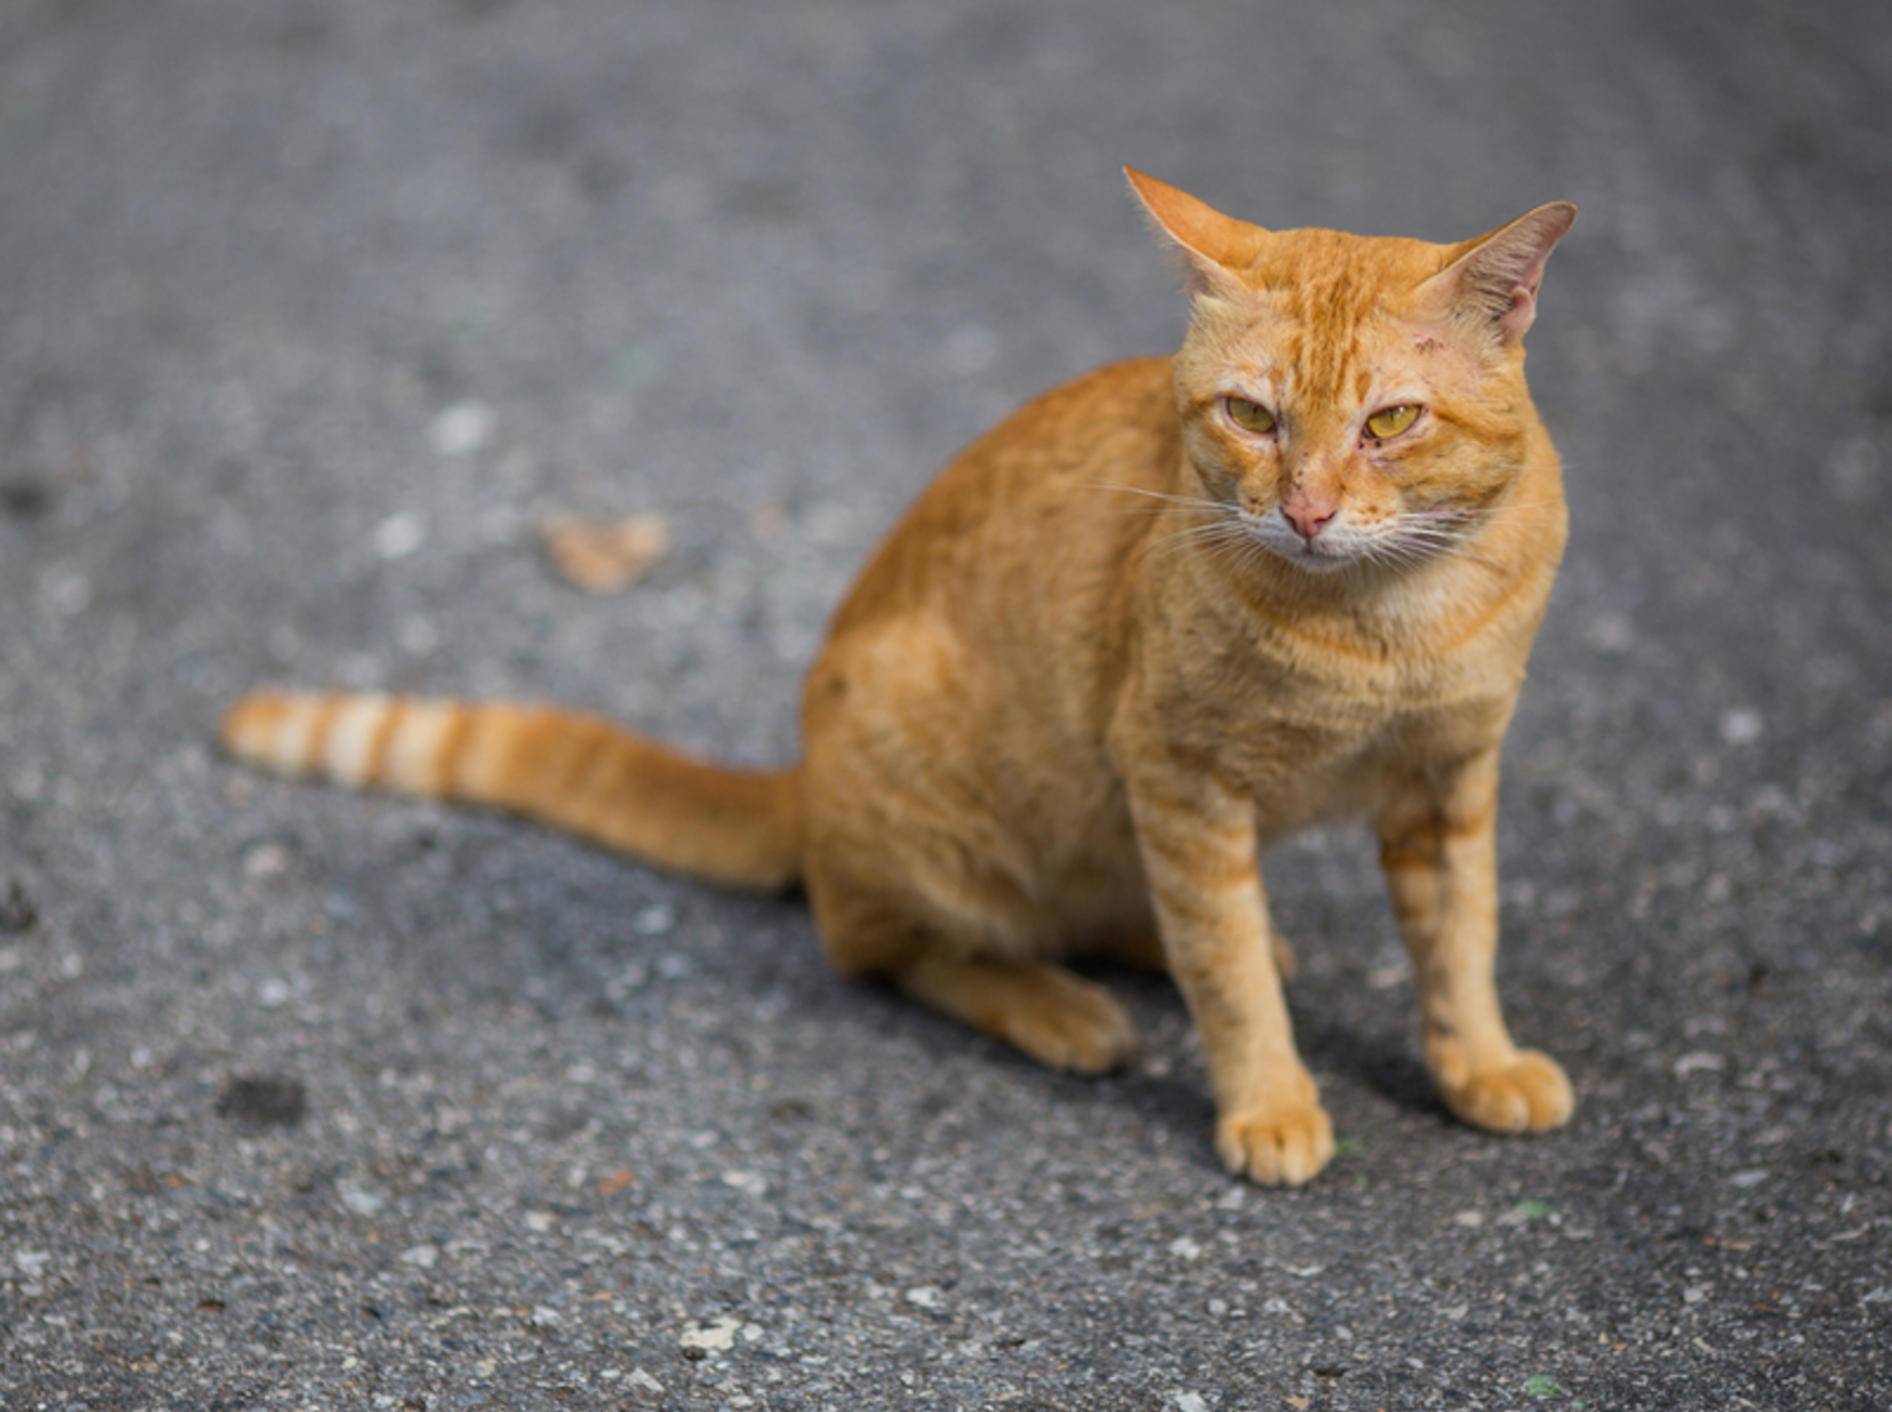 Streunerkatzen lieben vor allem die Freiheit – Bild: Shutterstock / Chaiplay